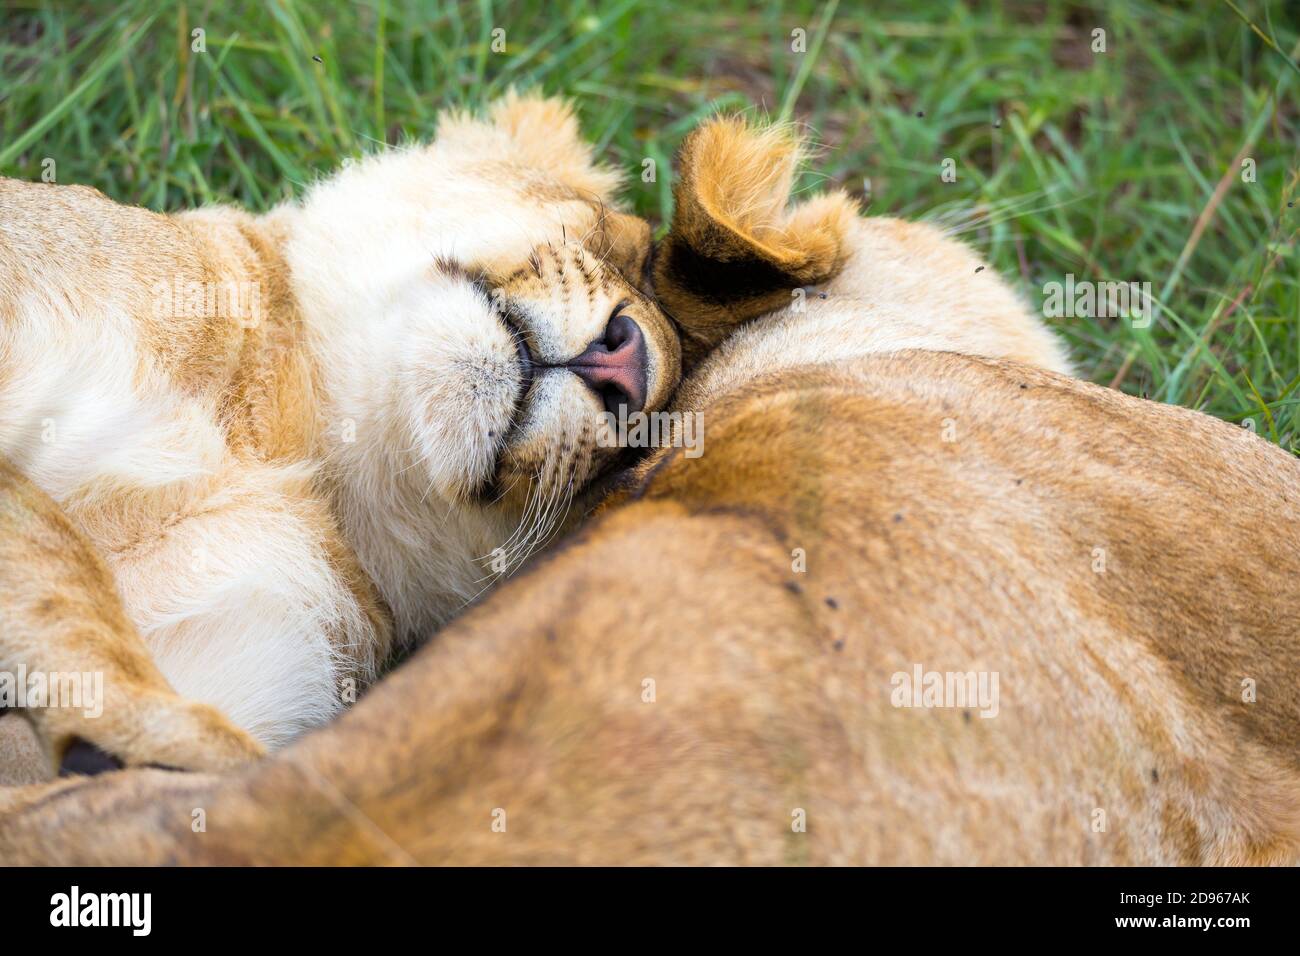 Algunos leones jóvenes se acurruca y juegan unos con otros. Foto de stock